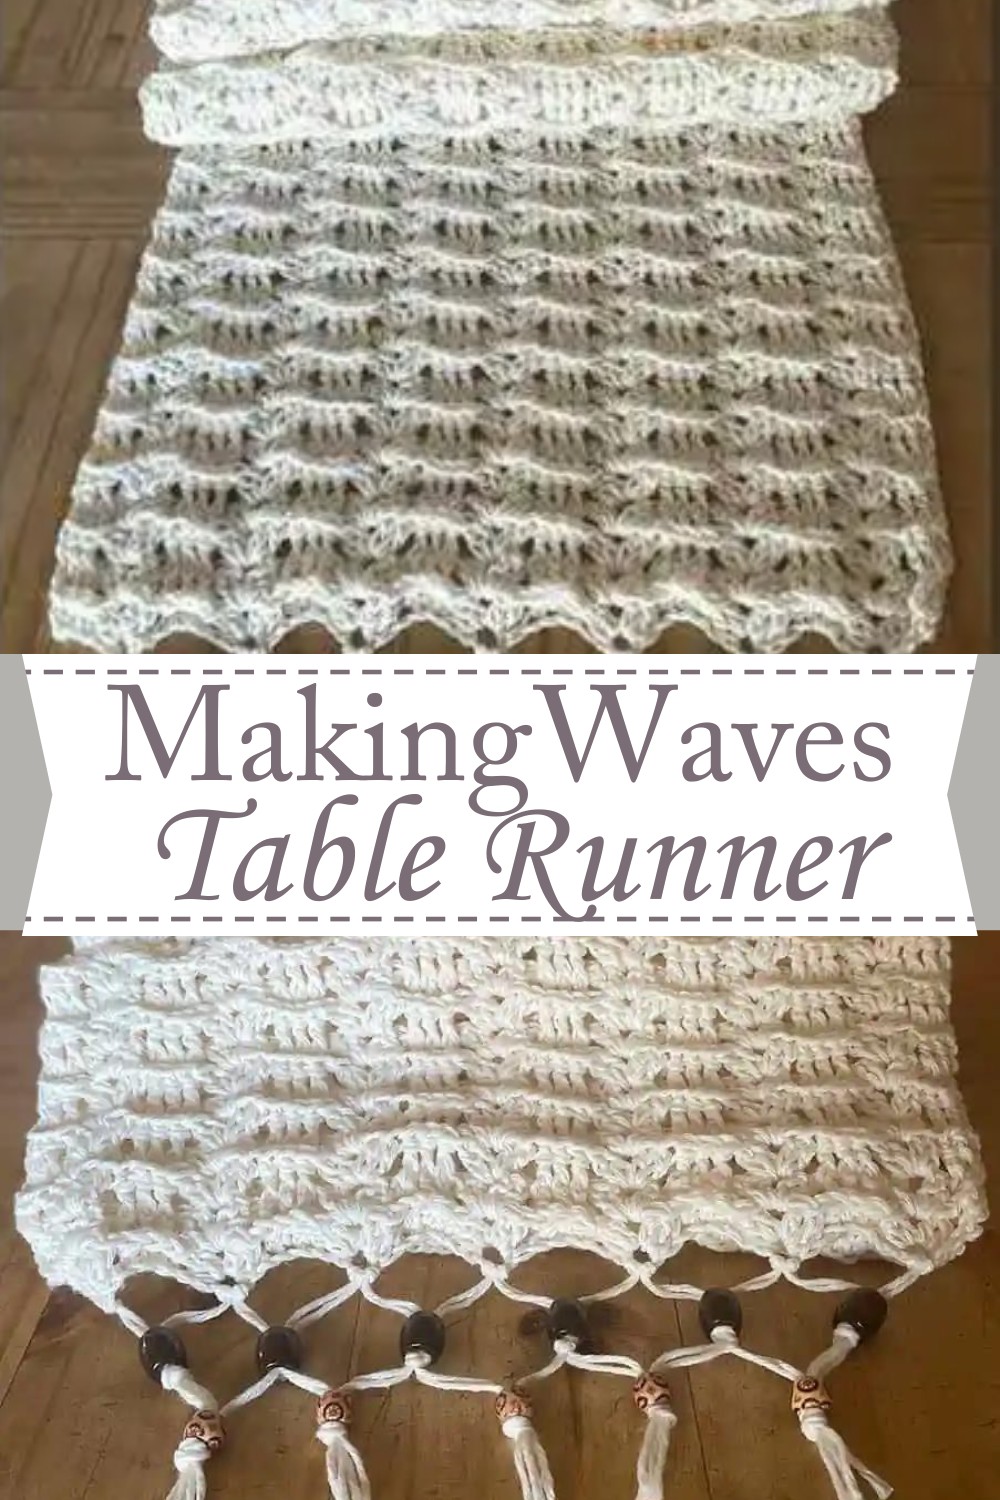 Making Waves Table Runner Crochet Pattern